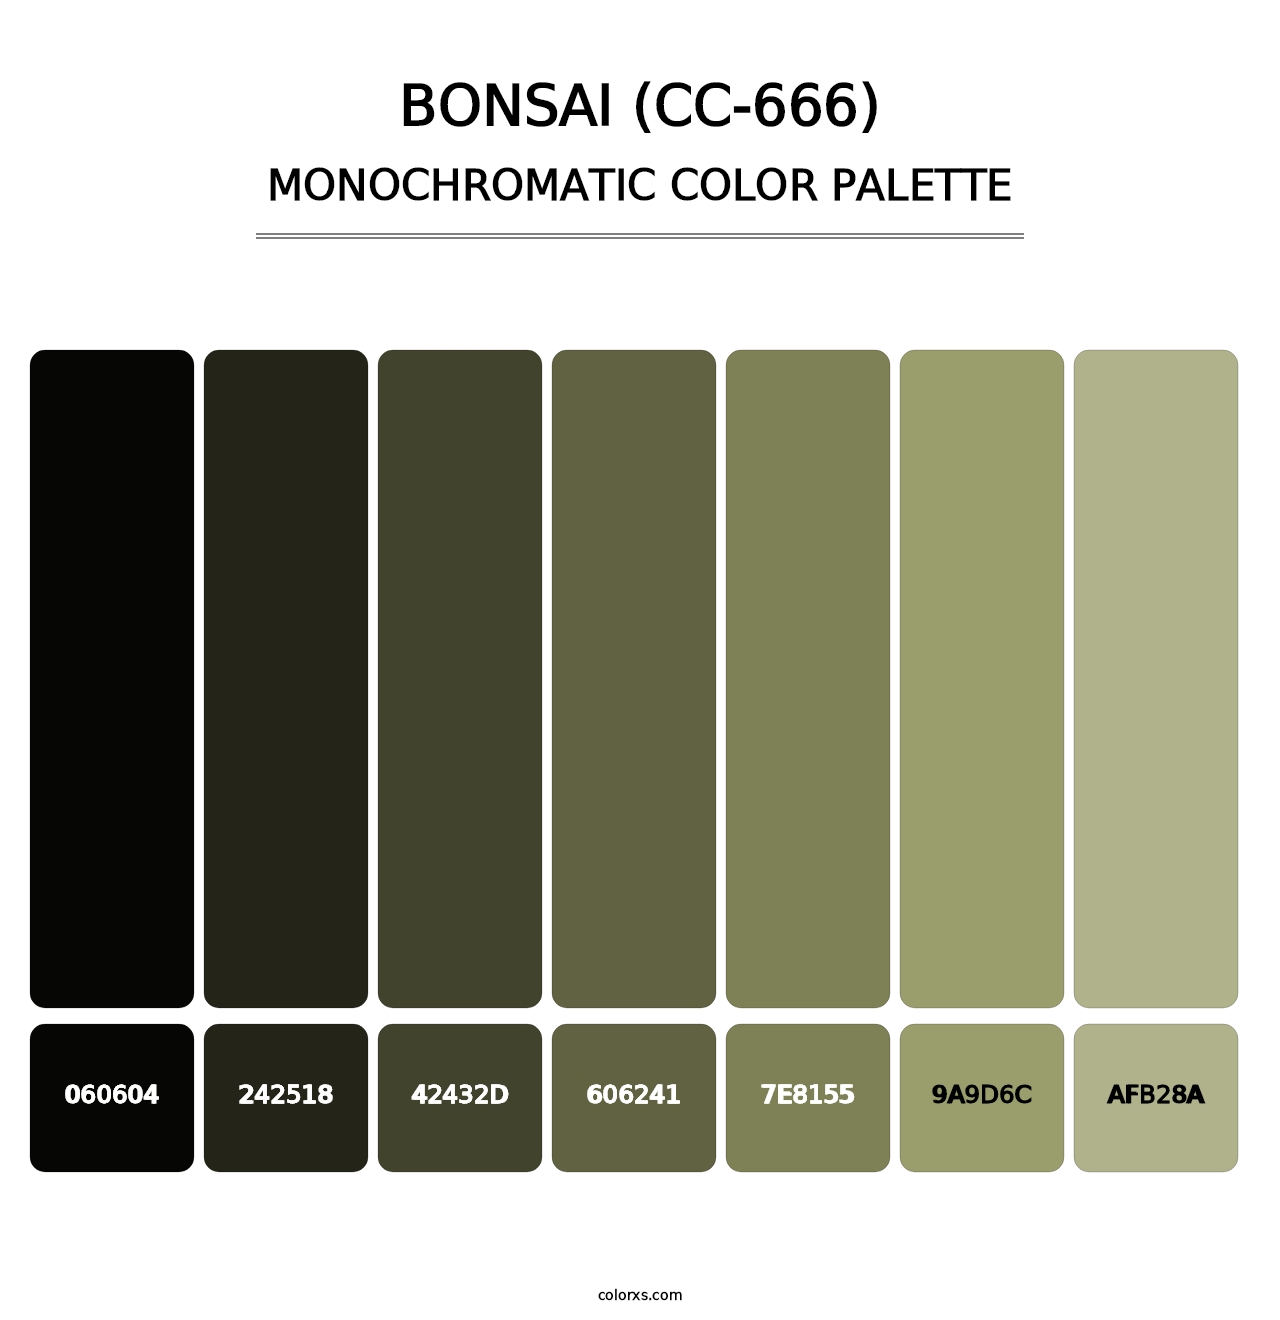 Bonsai (CC-666) - Monochromatic Color Palette